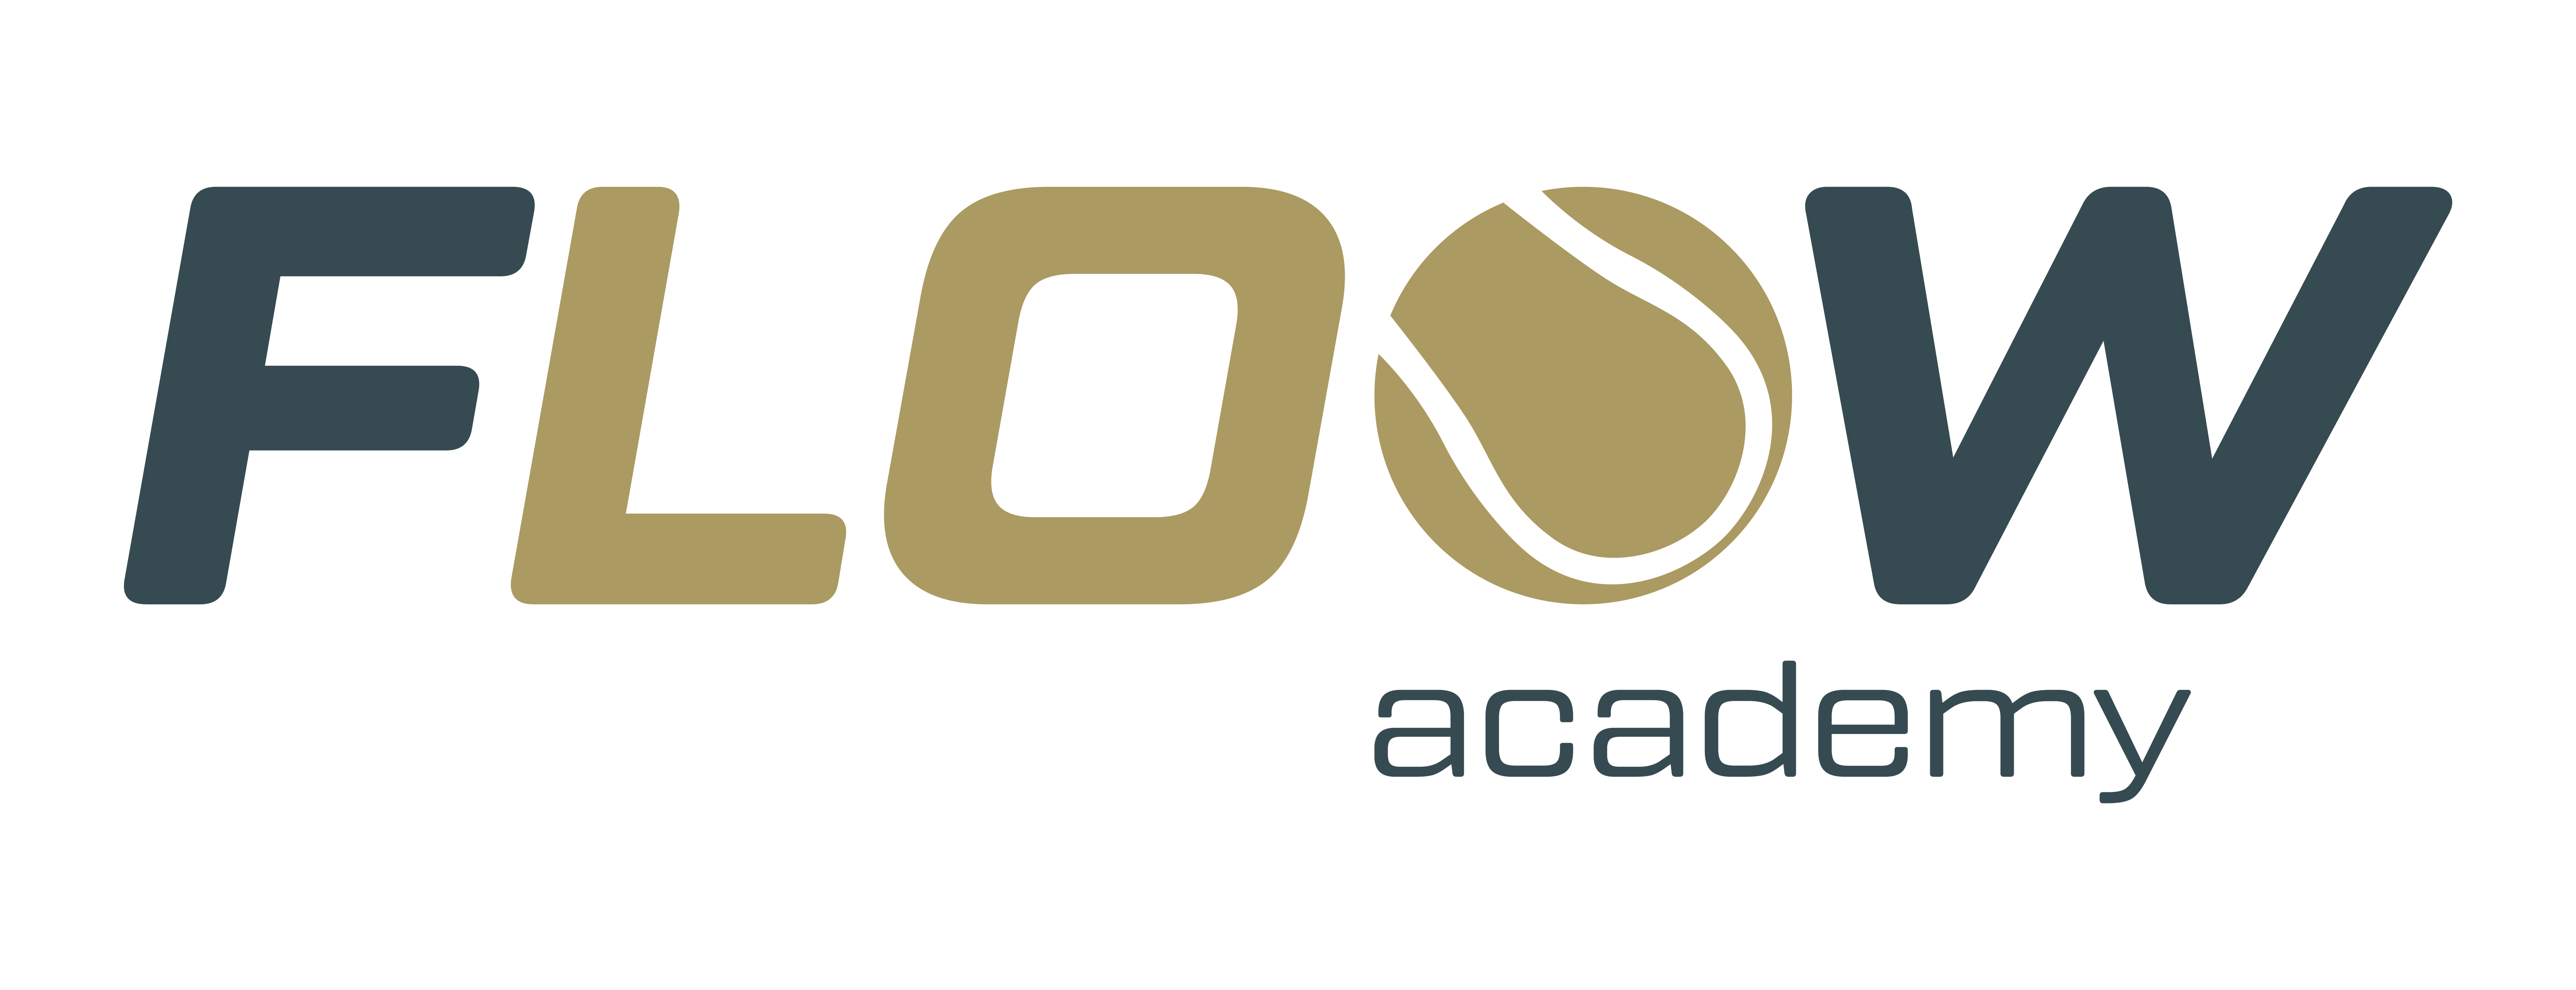 Floow Academy